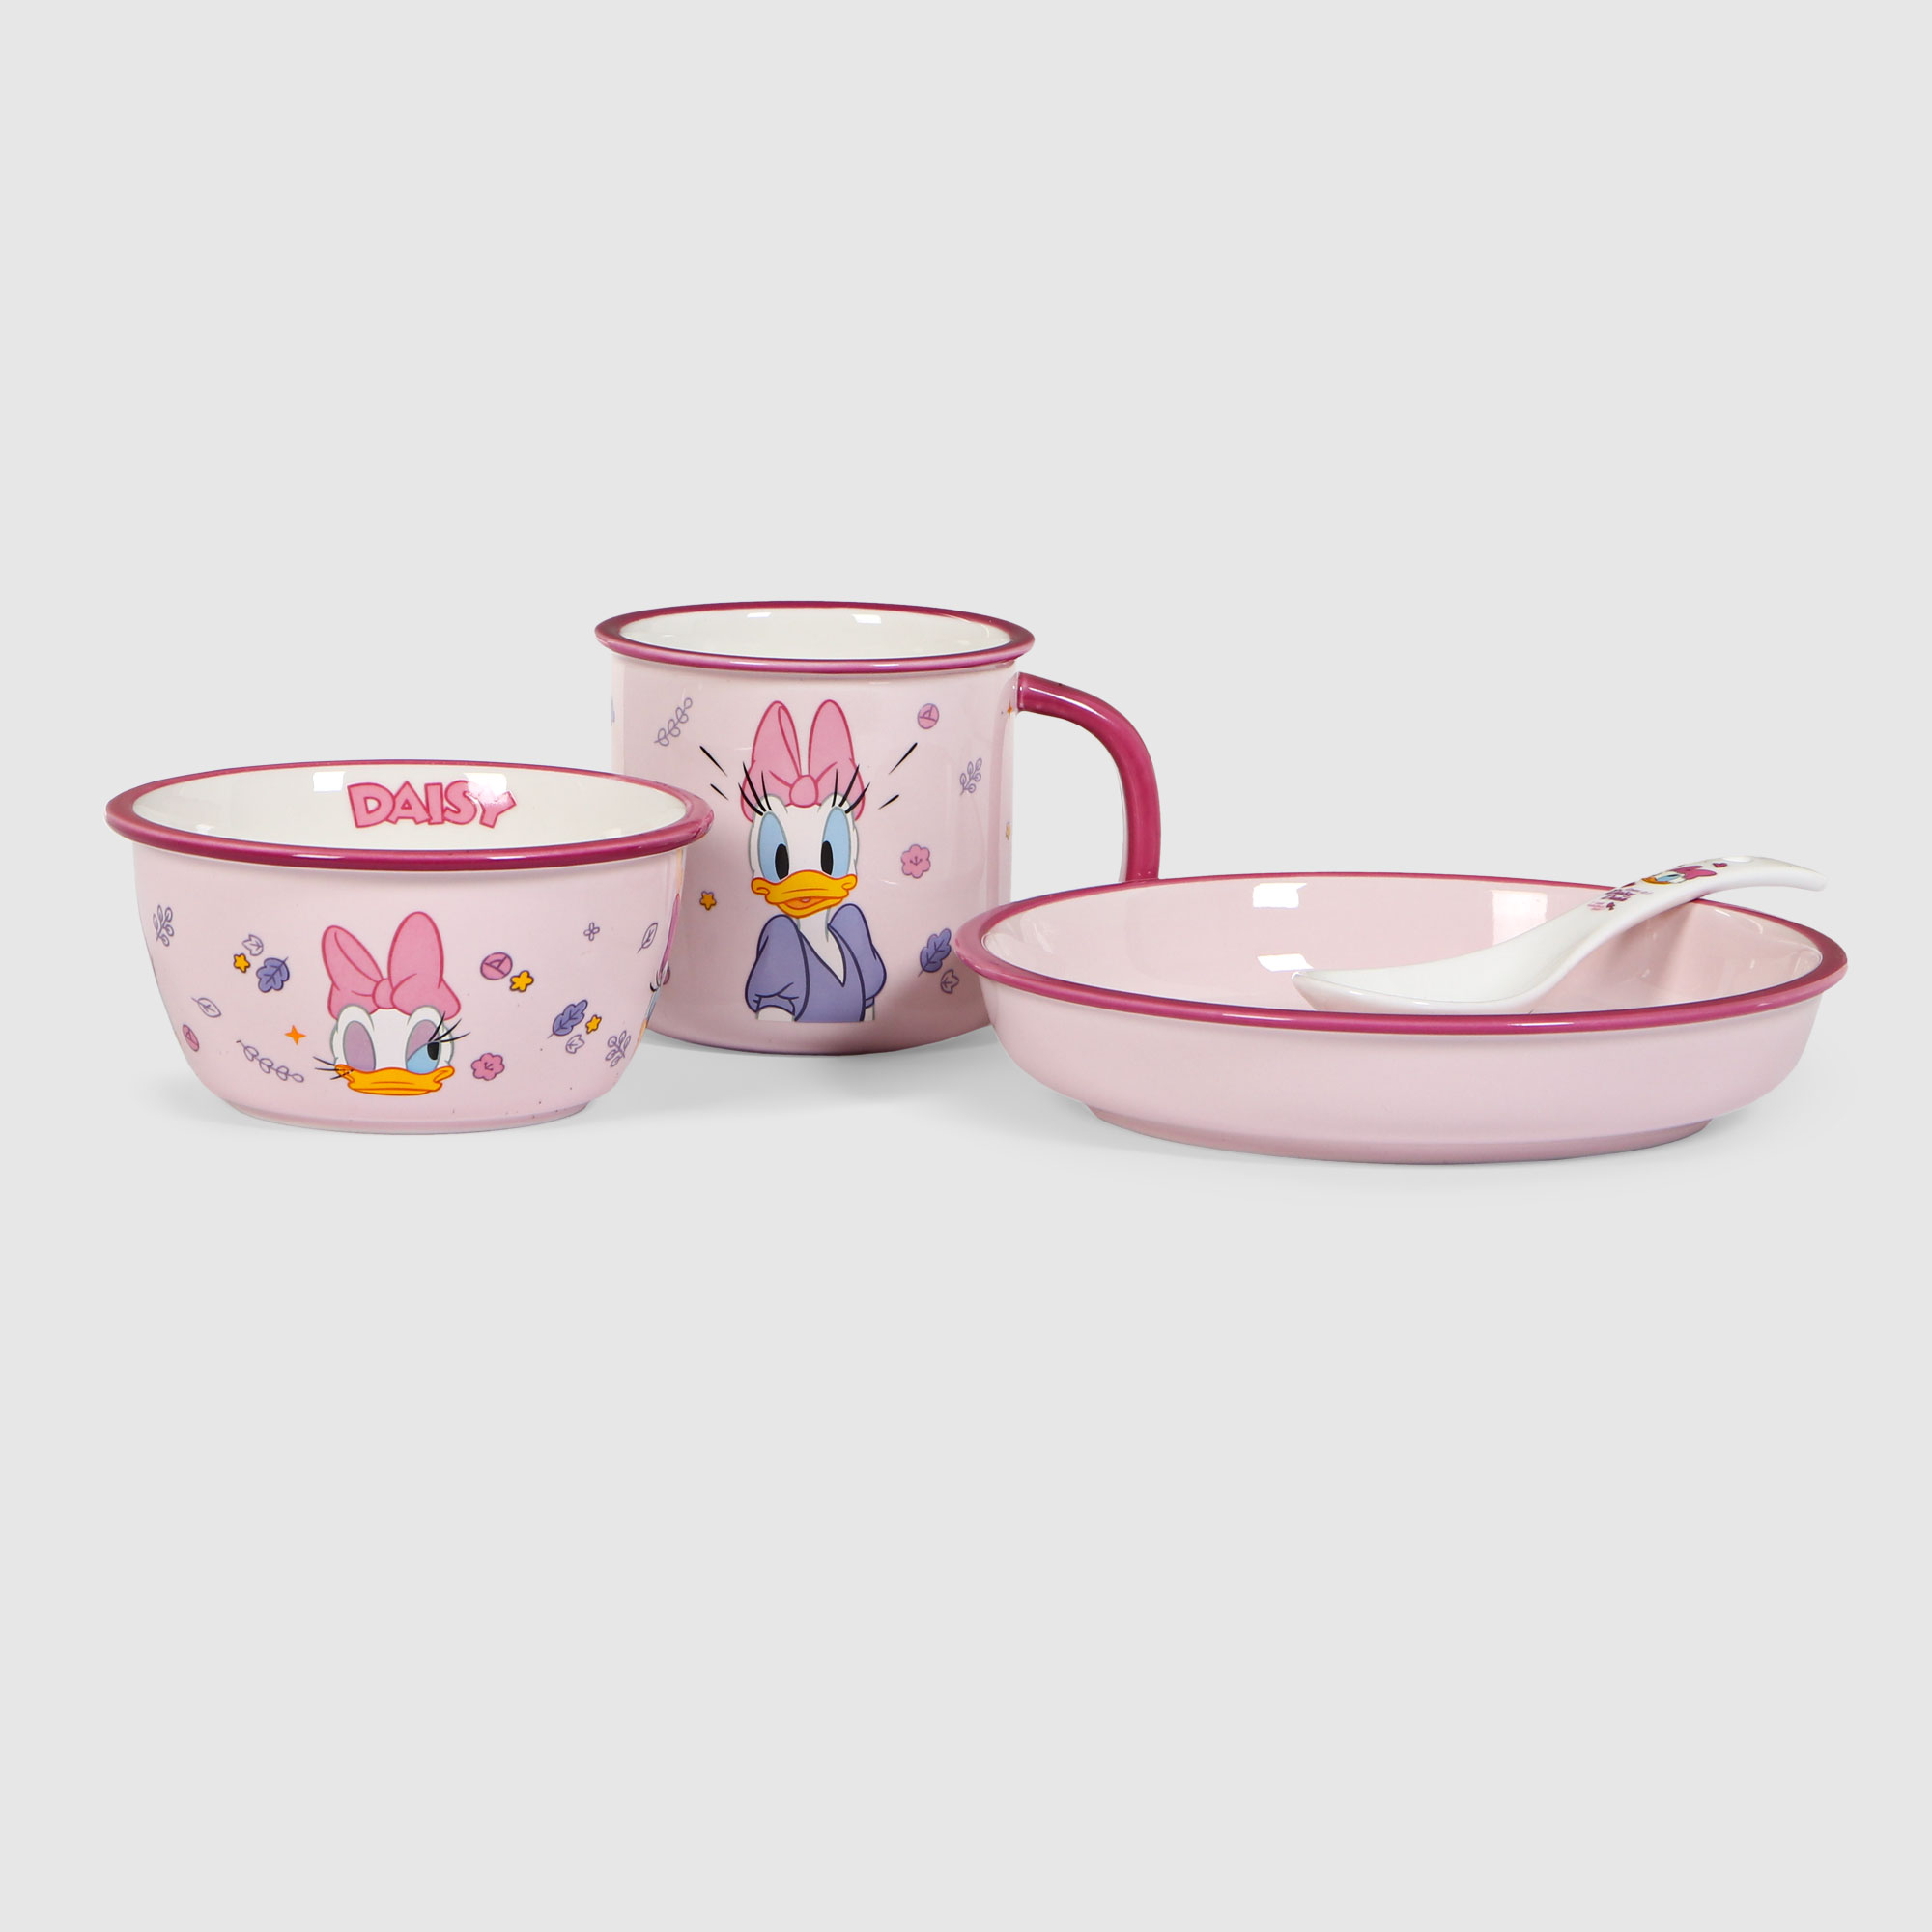 Набор посуды Disney Дэйзи 4 предмета, цвет розовый